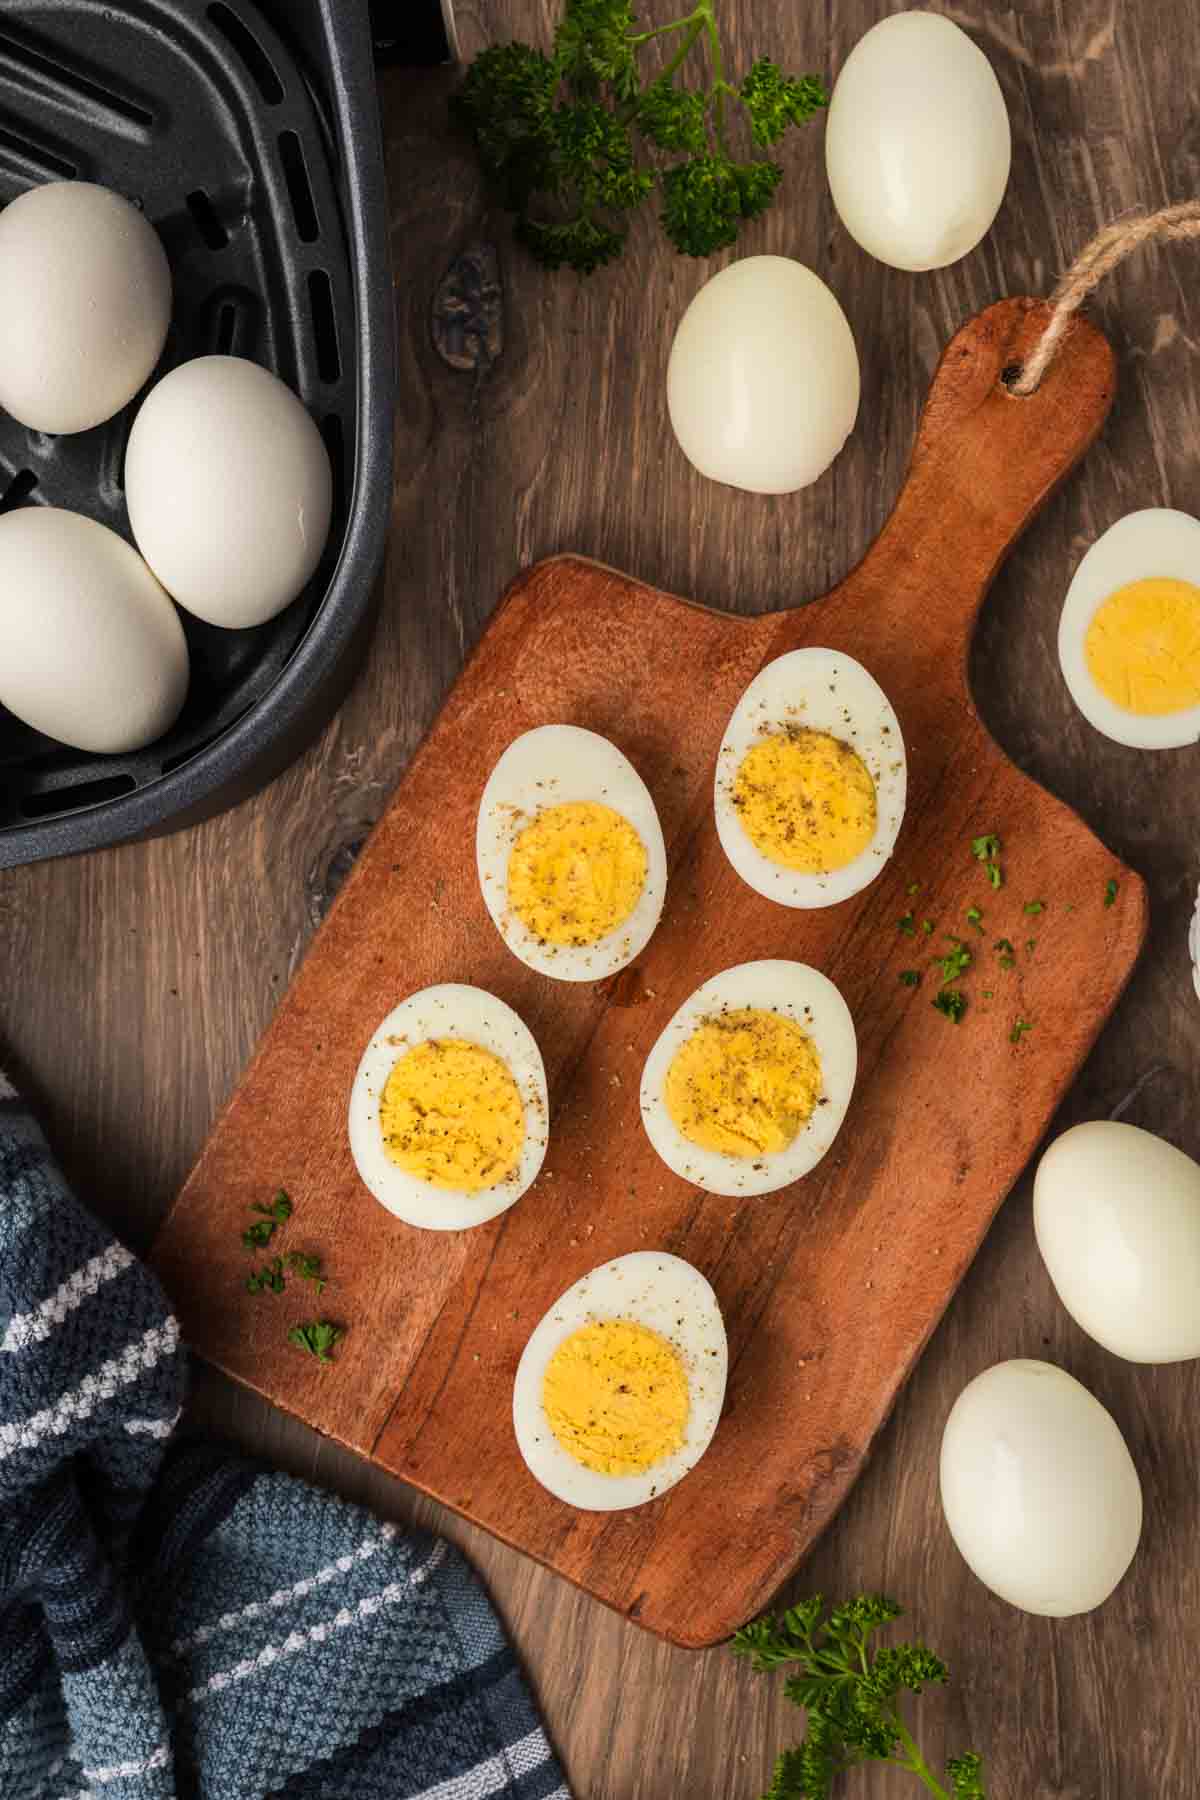 Hard boiled eggs cut in half on a cutting board